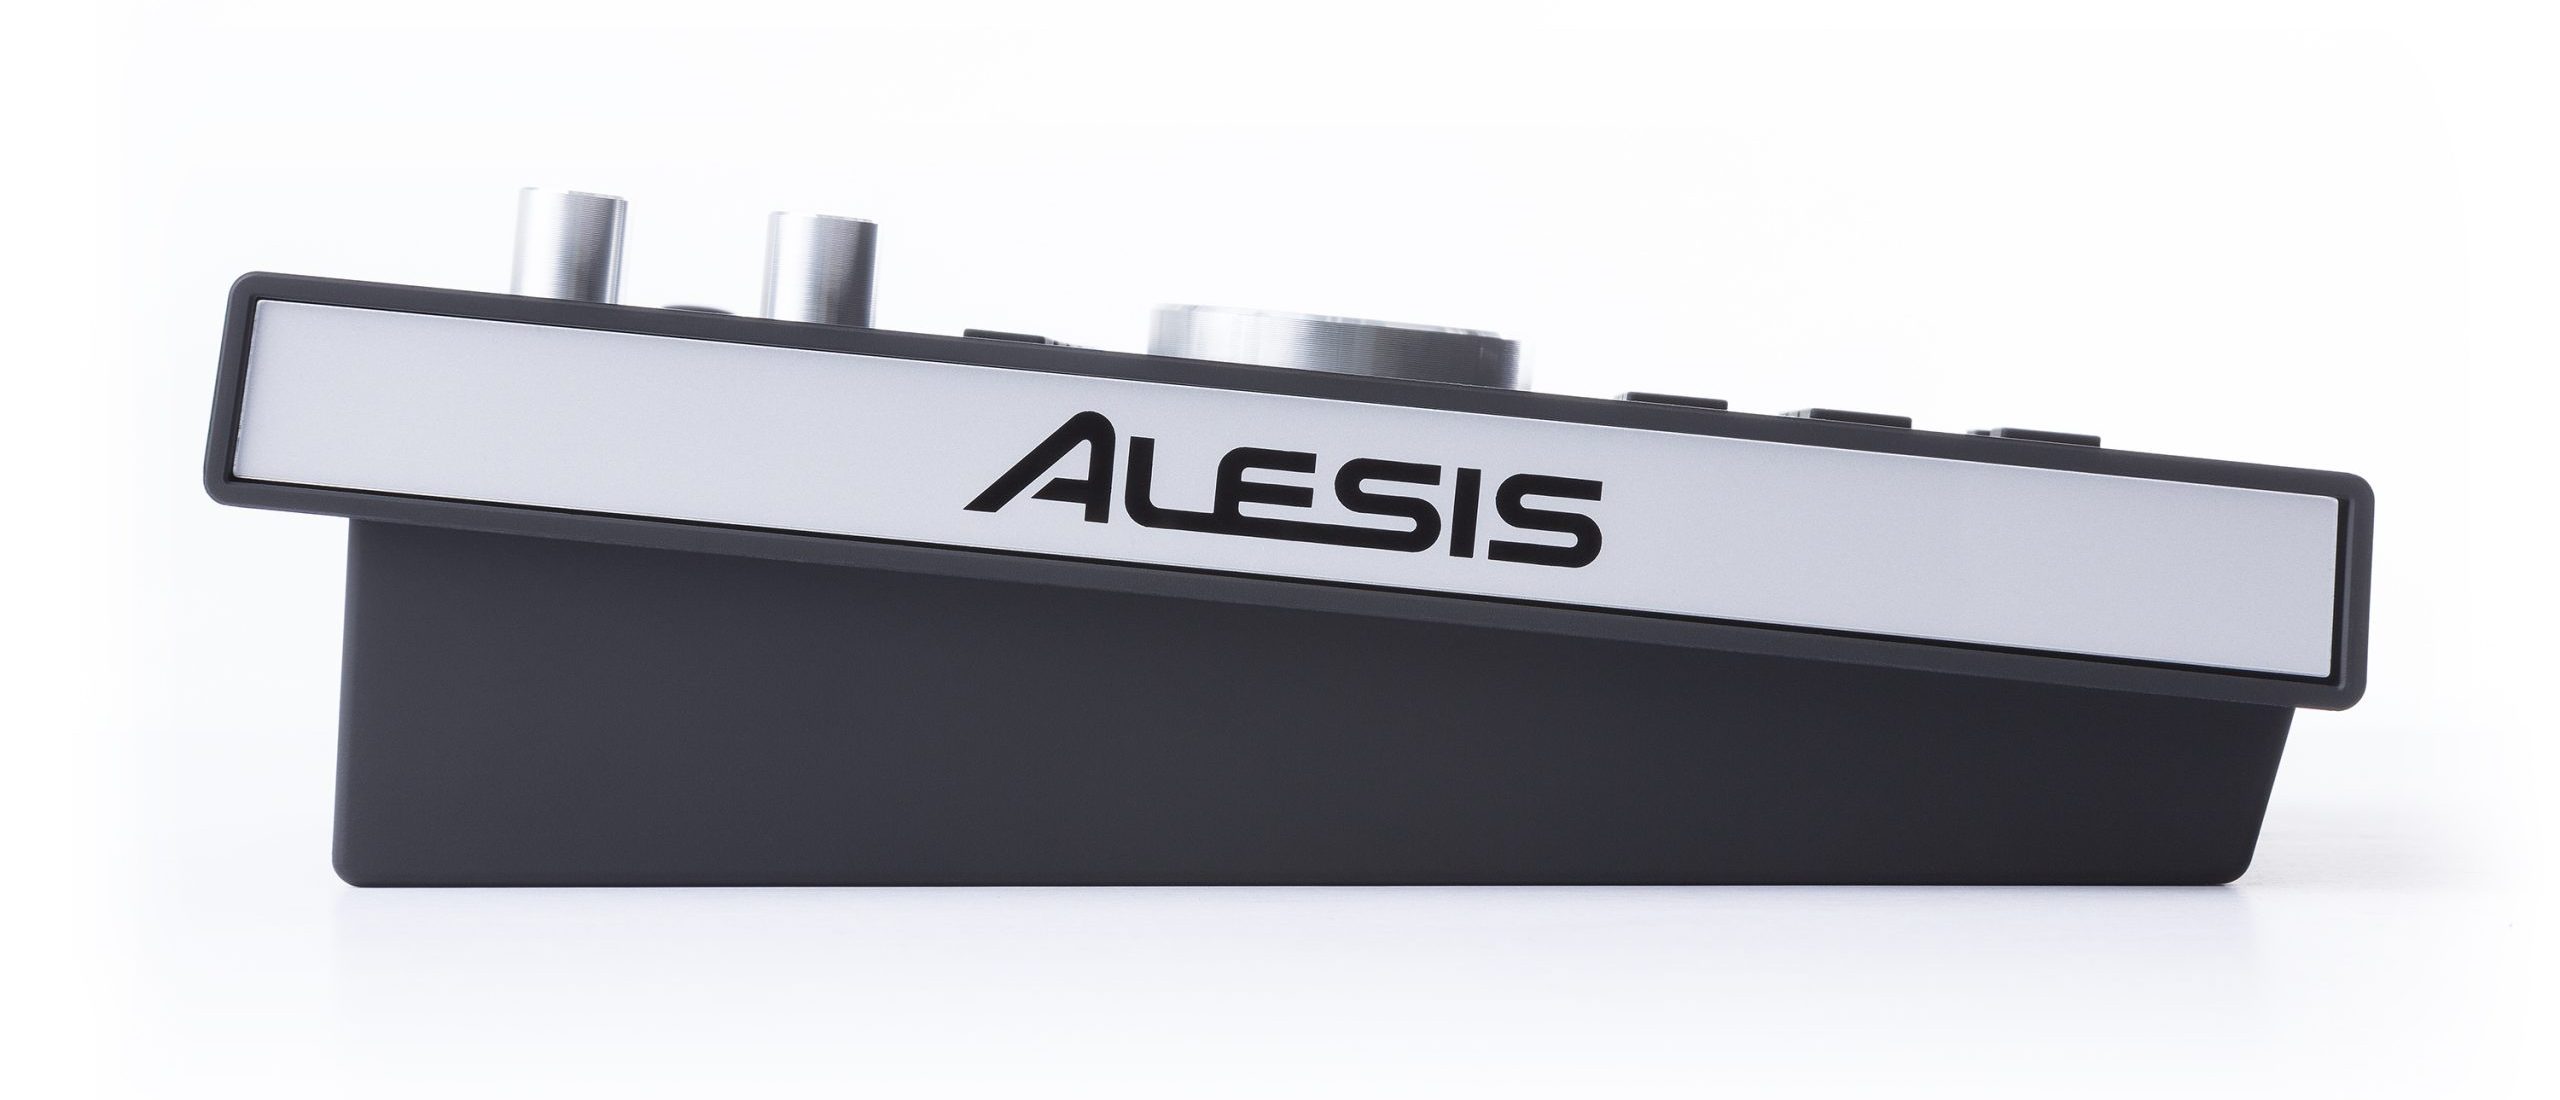 Alesis Command Advanced Drum Module